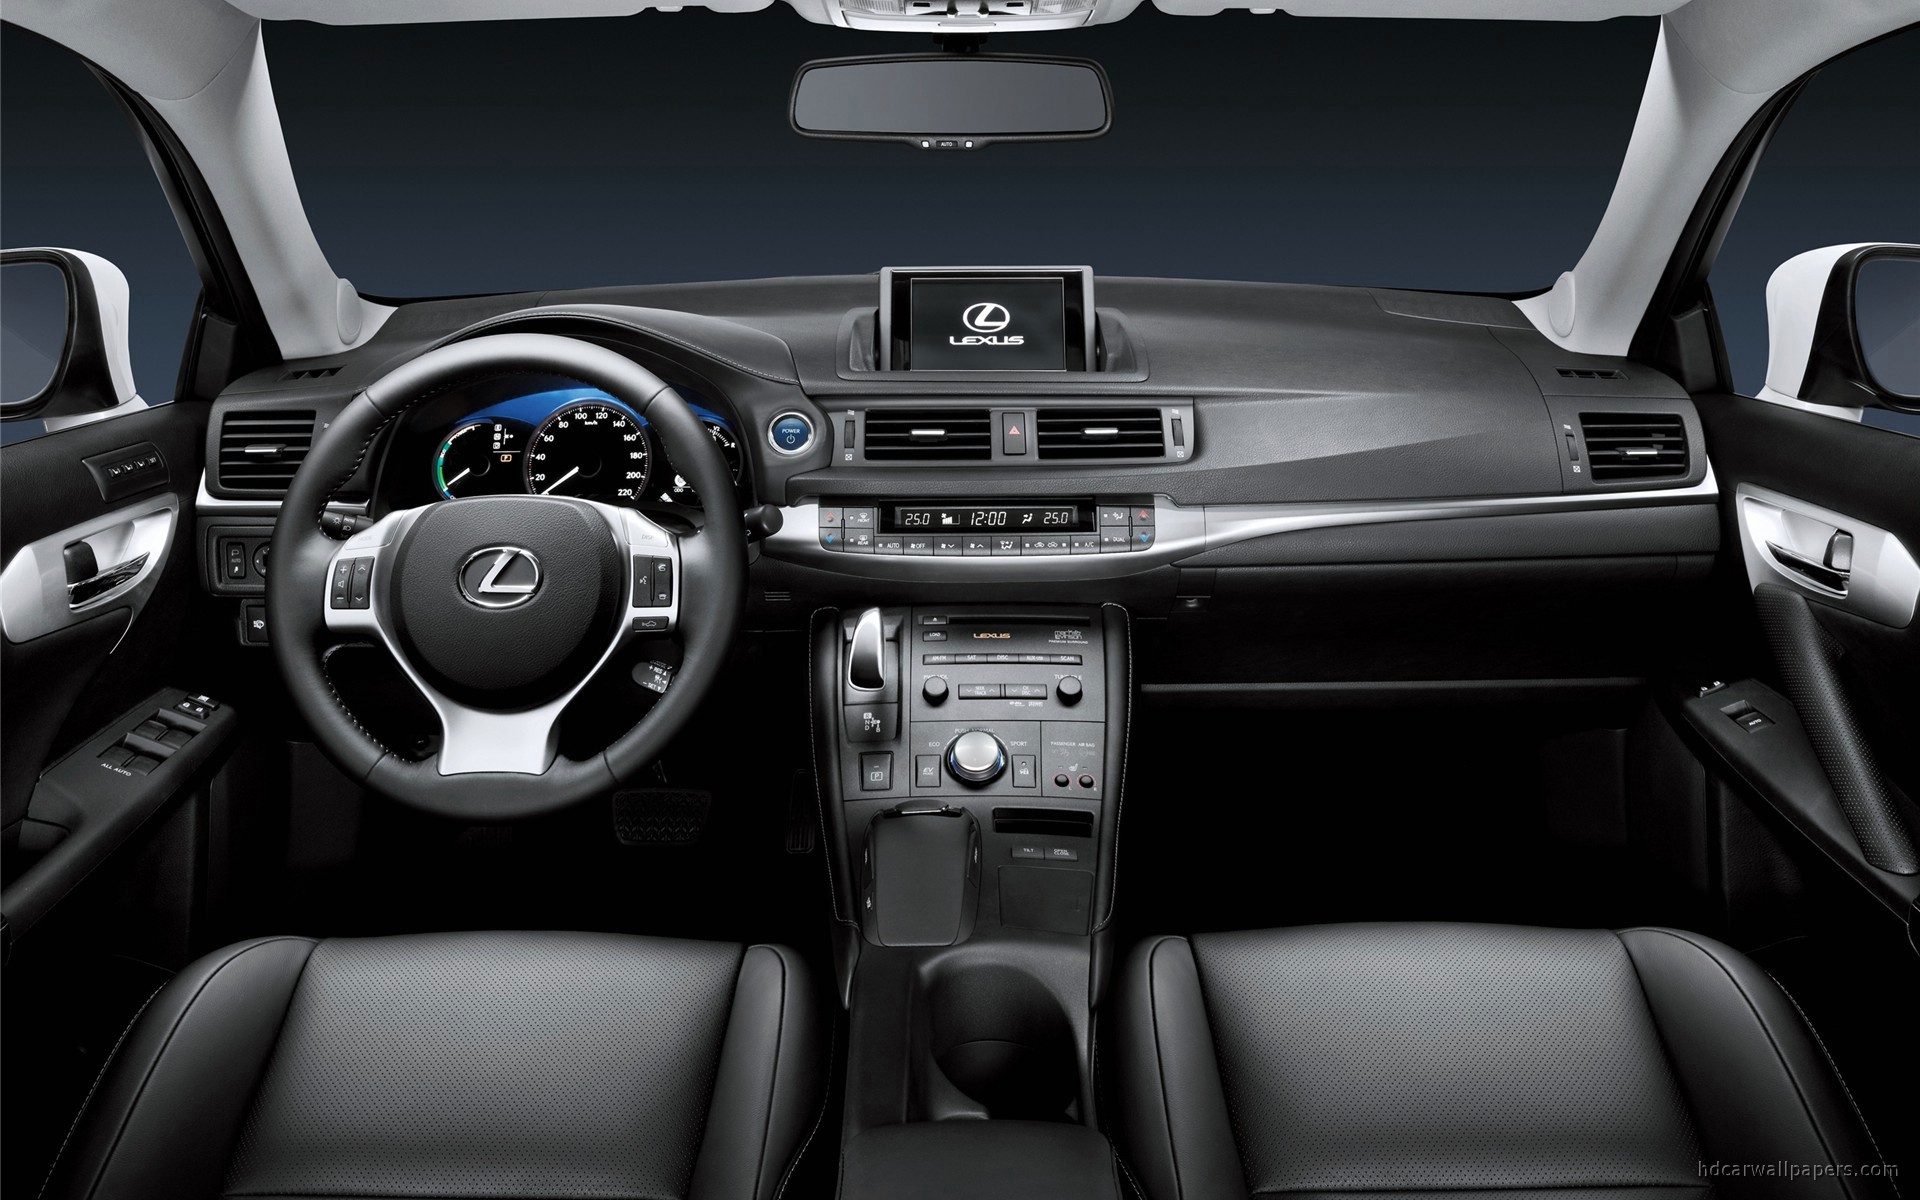  Обзор автомобиля Lexus CT 200h 